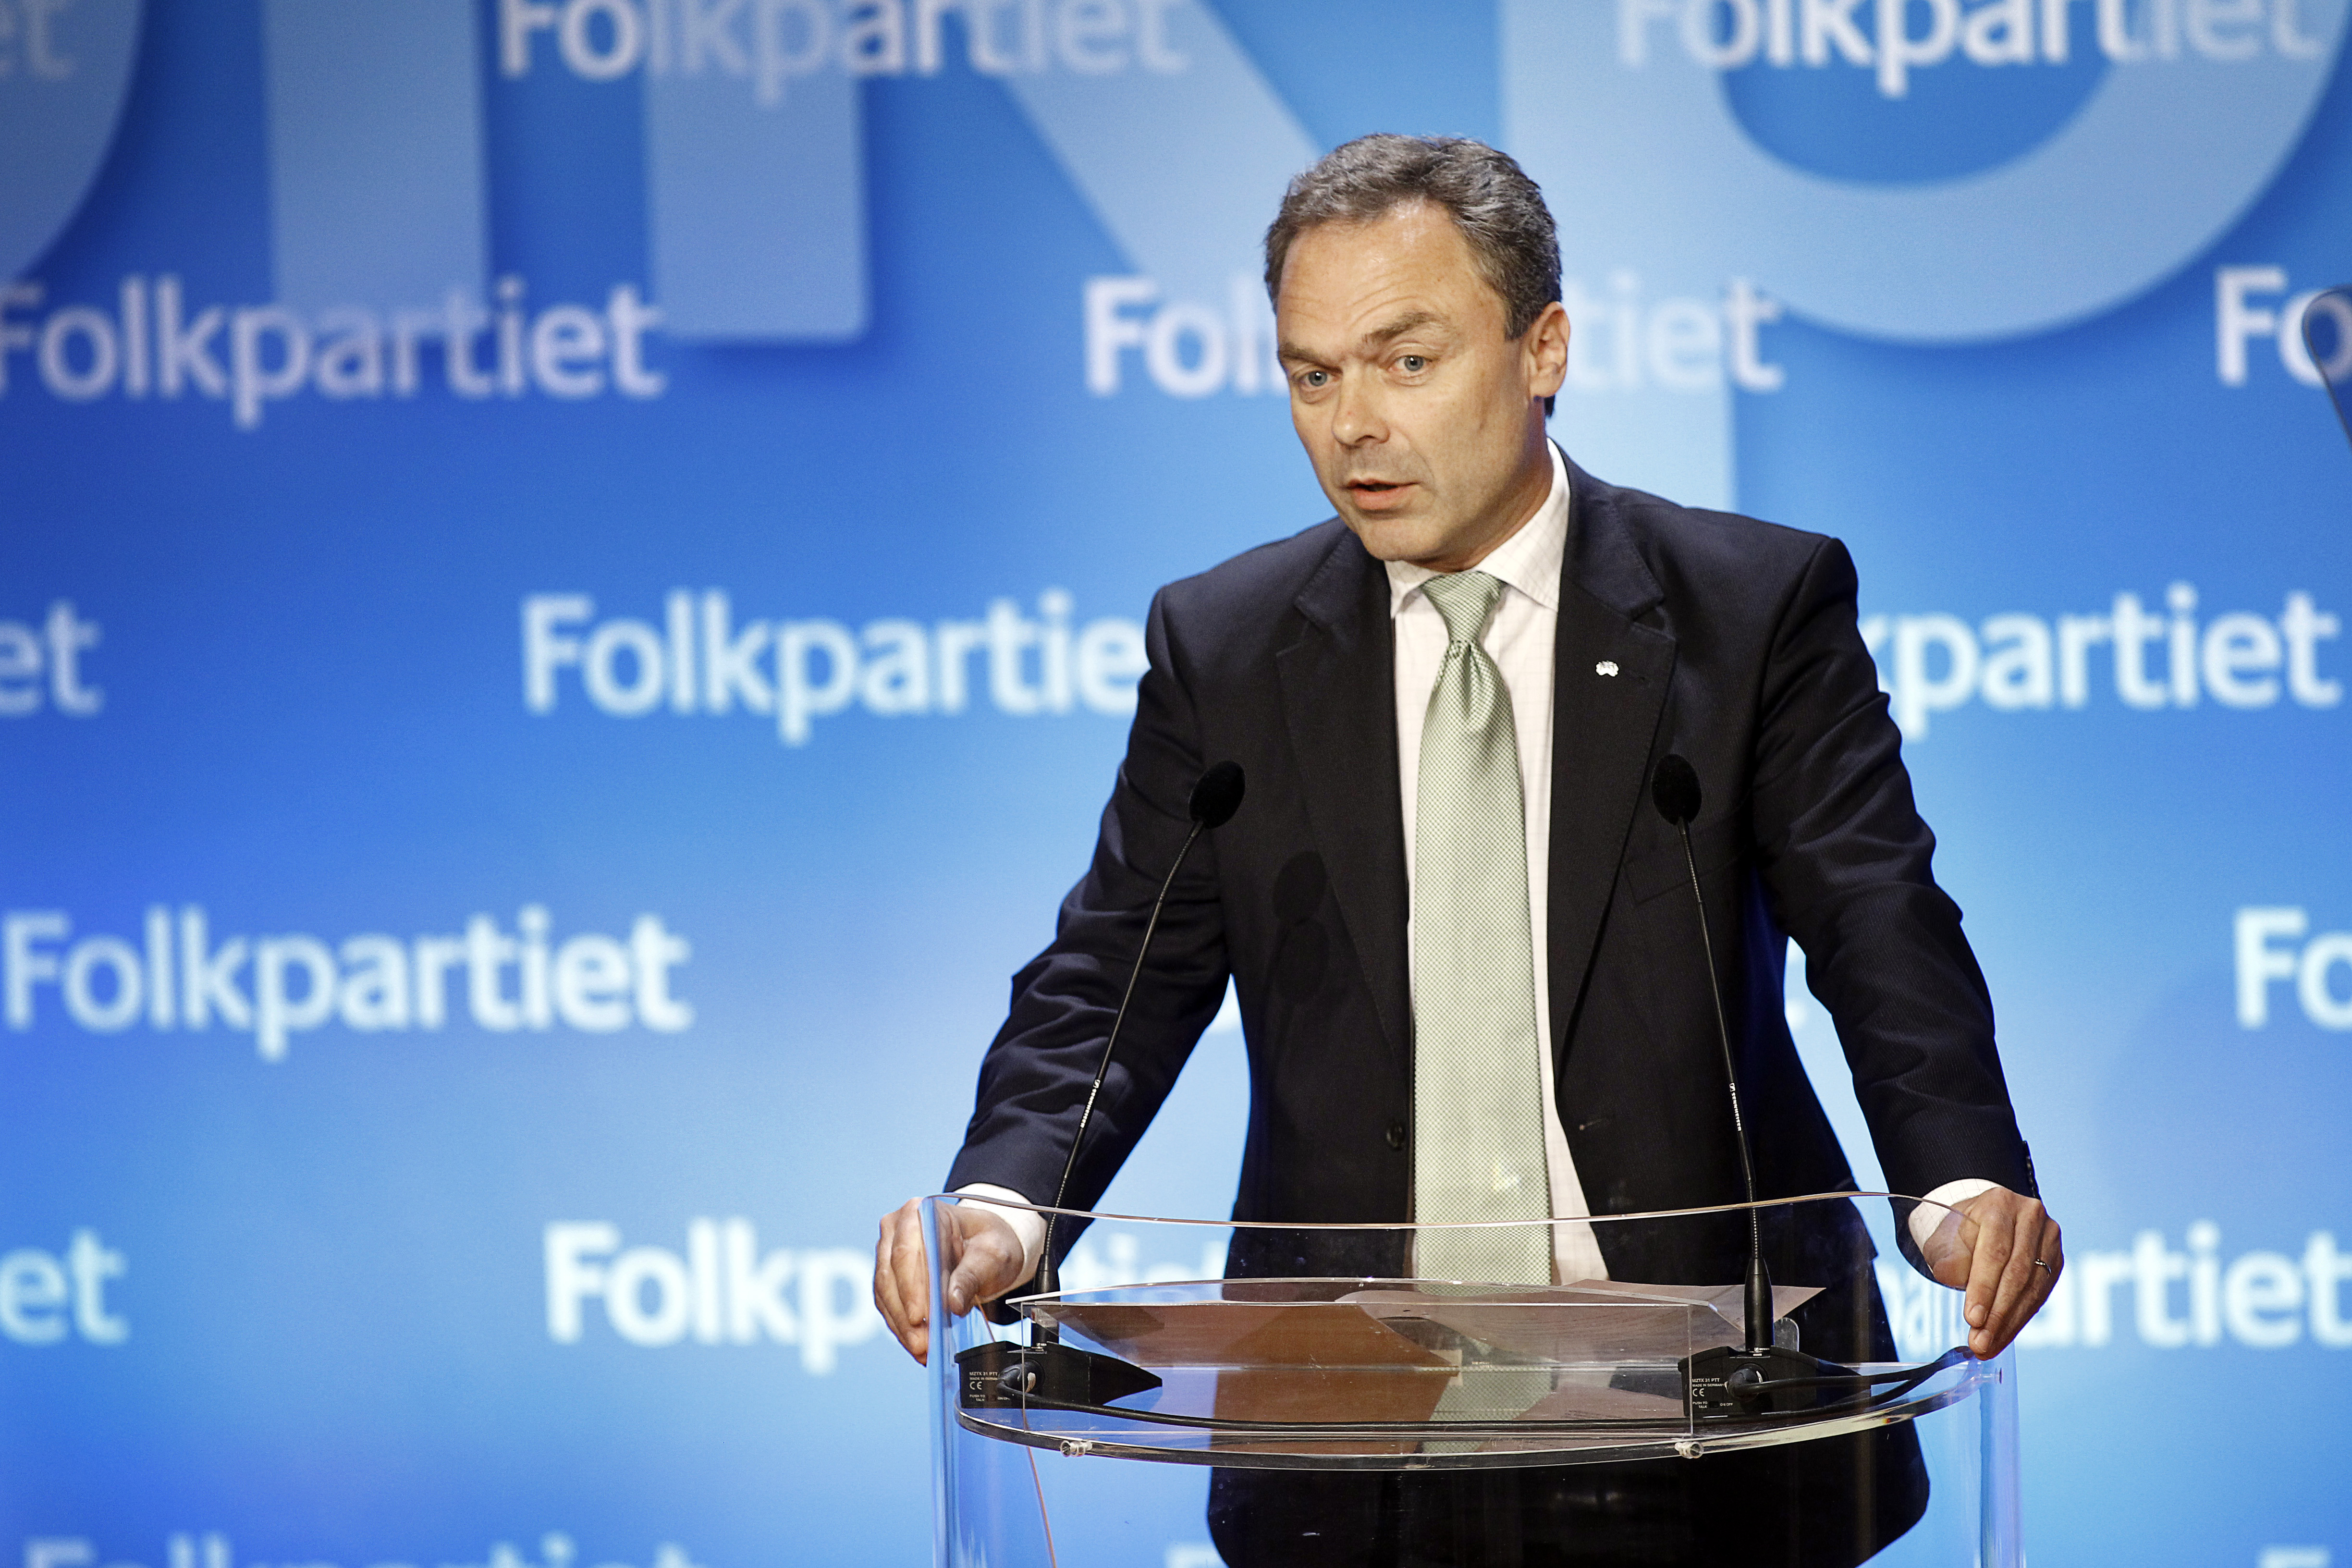 Riksdagsvalet 2010, Regeringen, Jan Björklund, Alliansen, Politik, Liberalerna